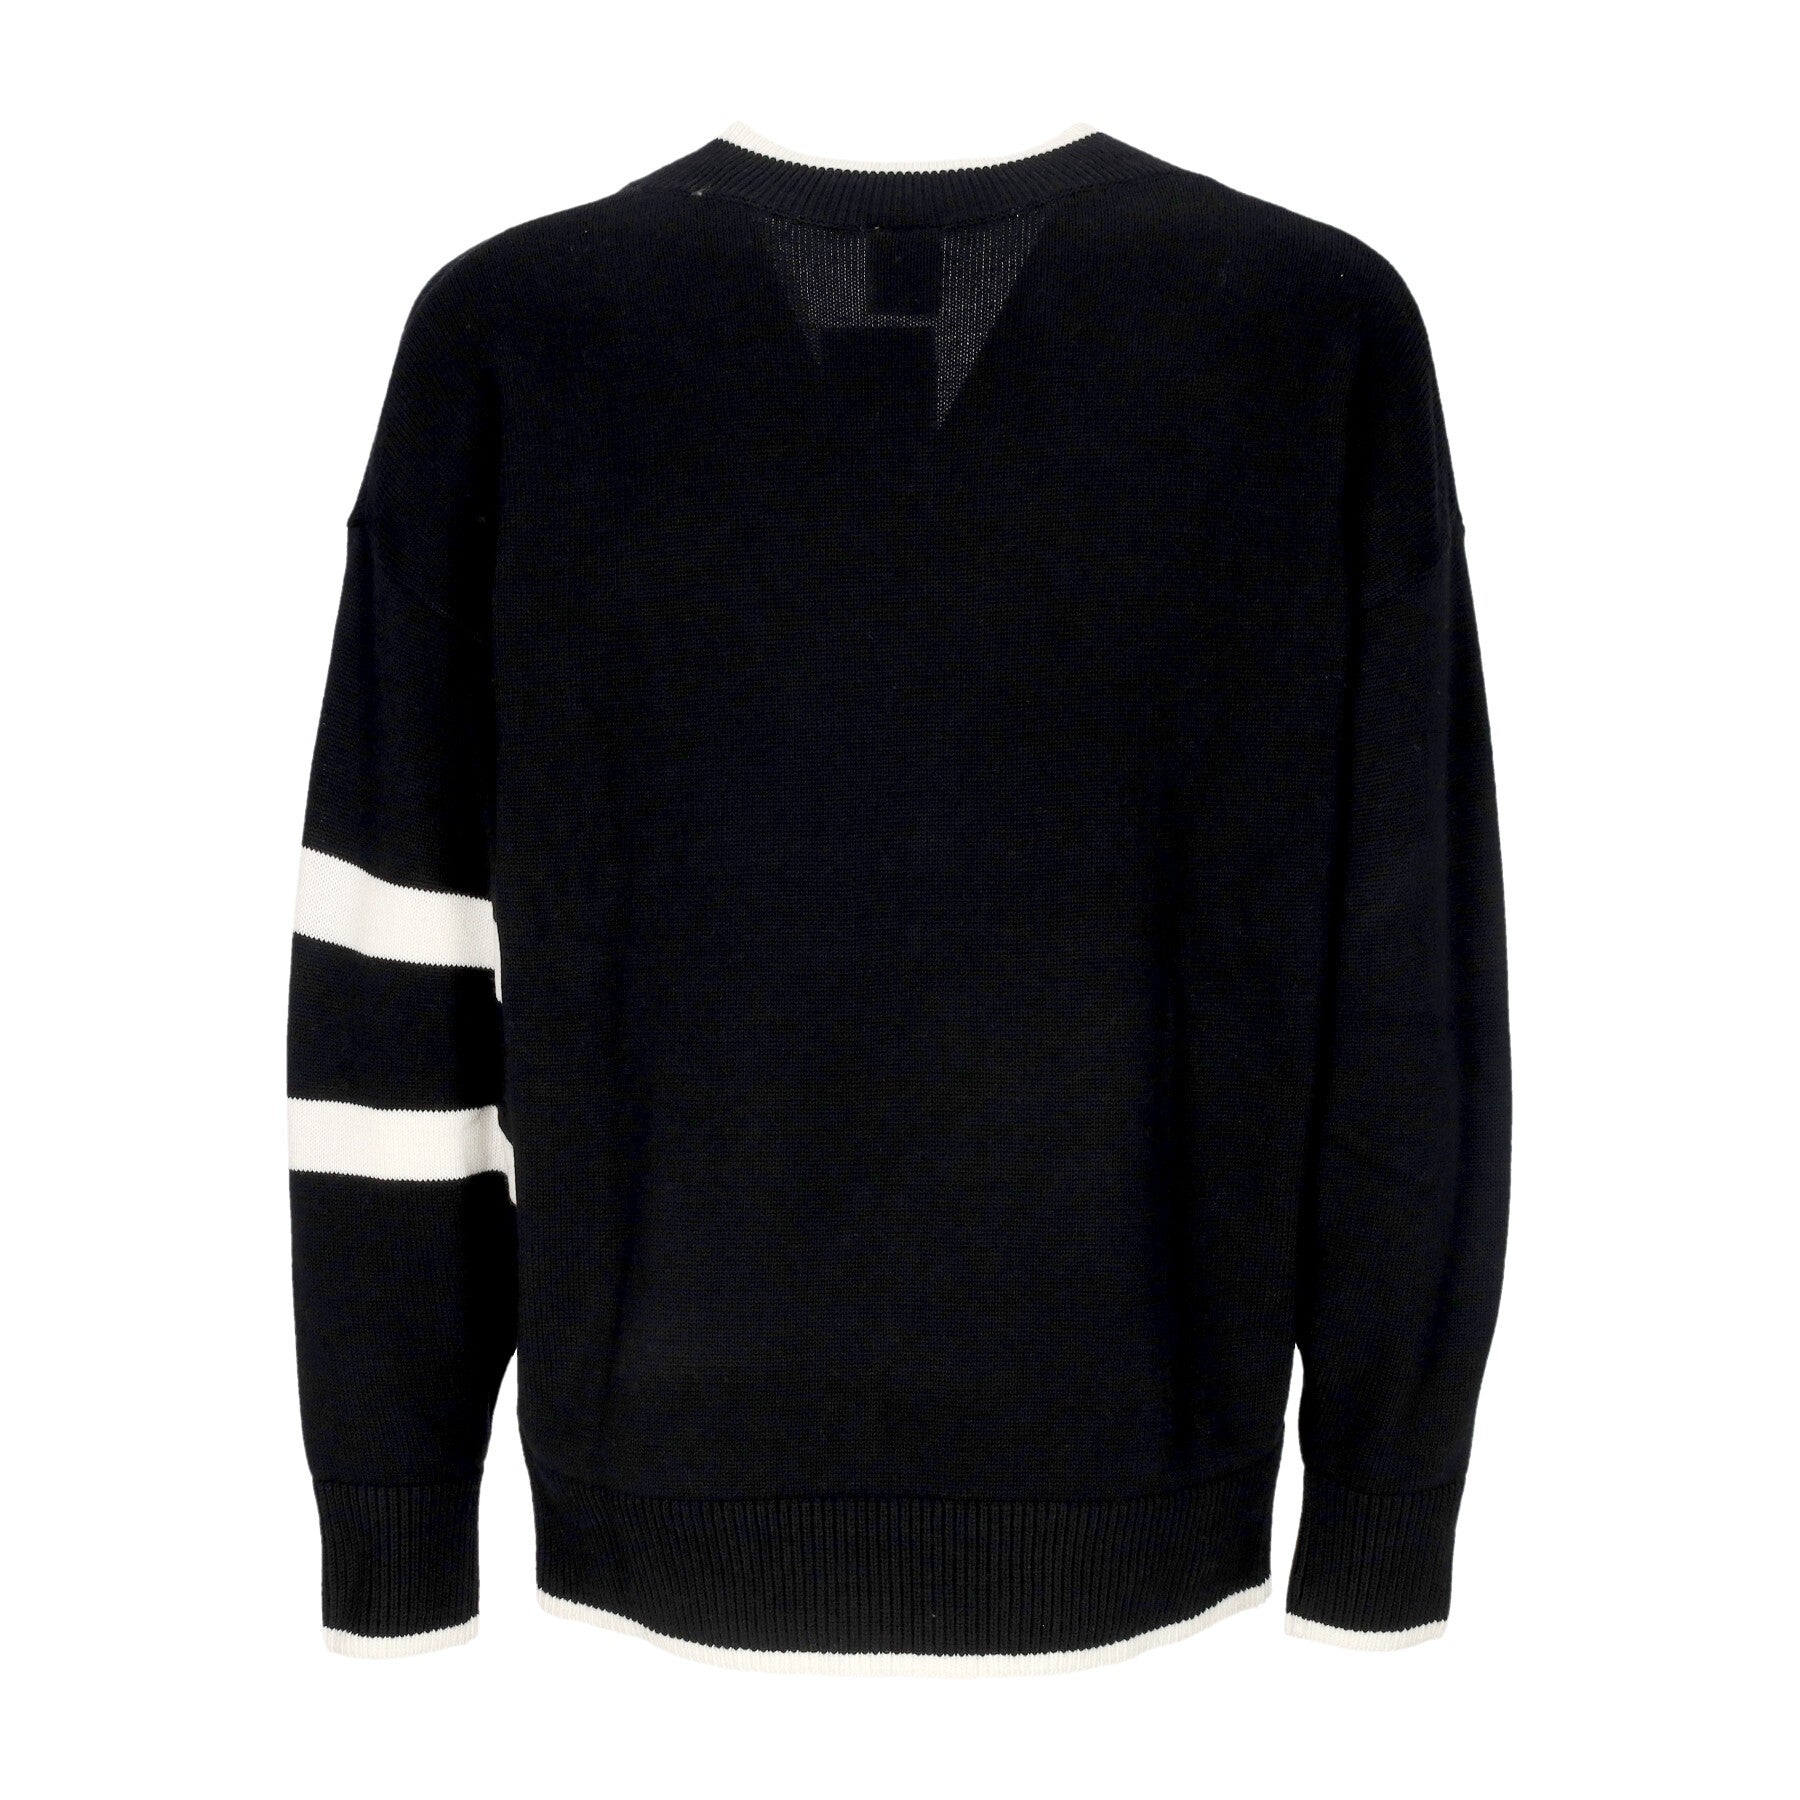 Nike, Maglione Leggero Uomo Sportswear Trend Sweater, 